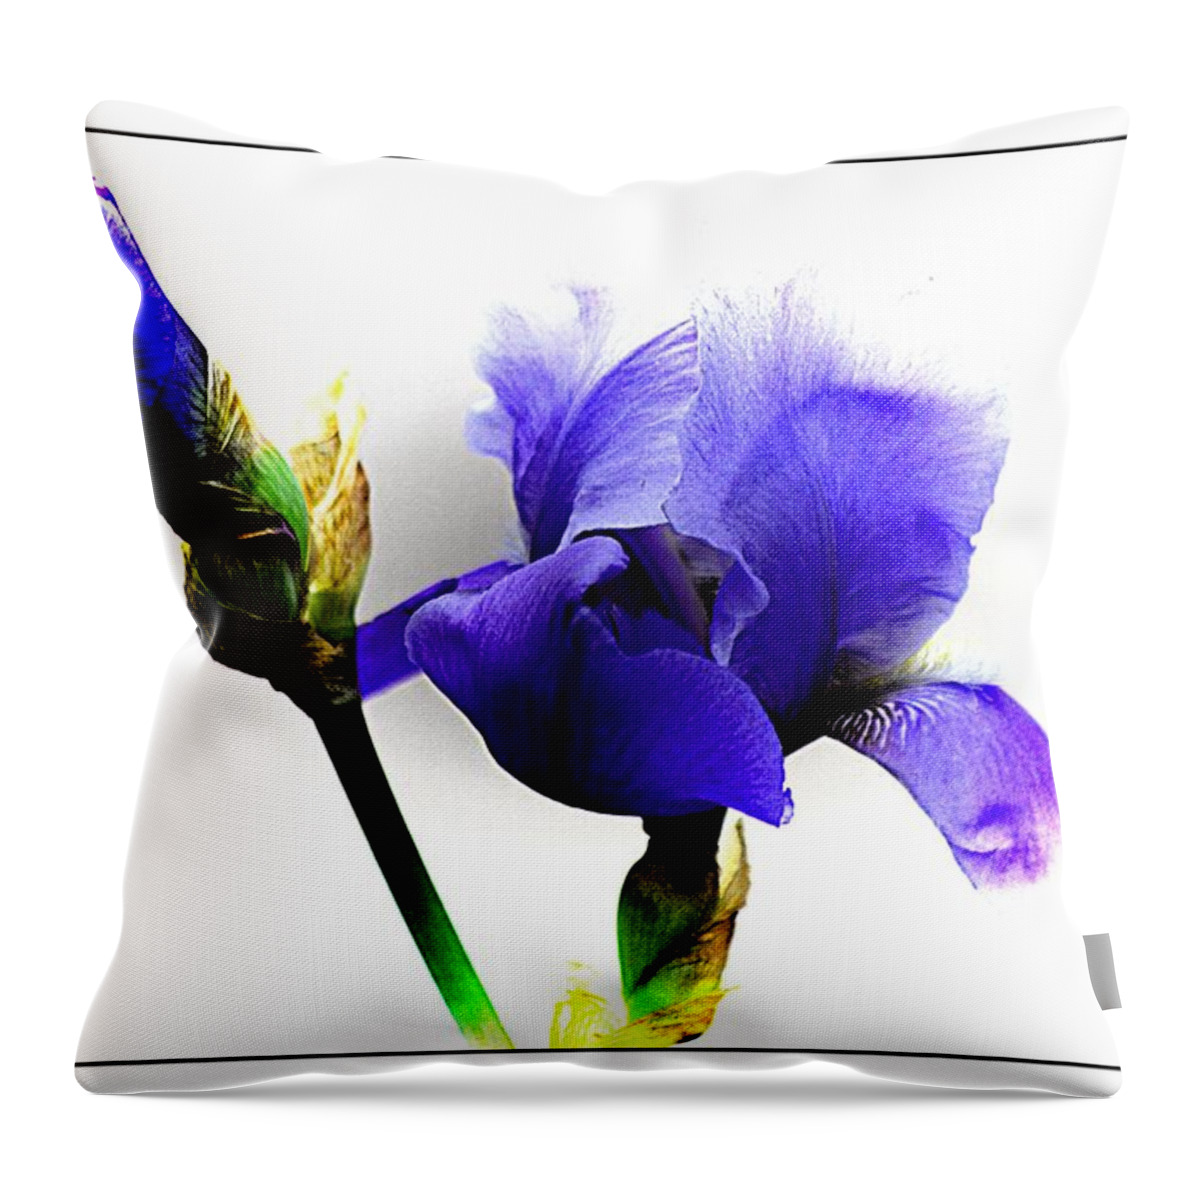 Blue Iris Throw Pillow featuring the photograph The Blue Iris by Karen McKenzie McAdoo